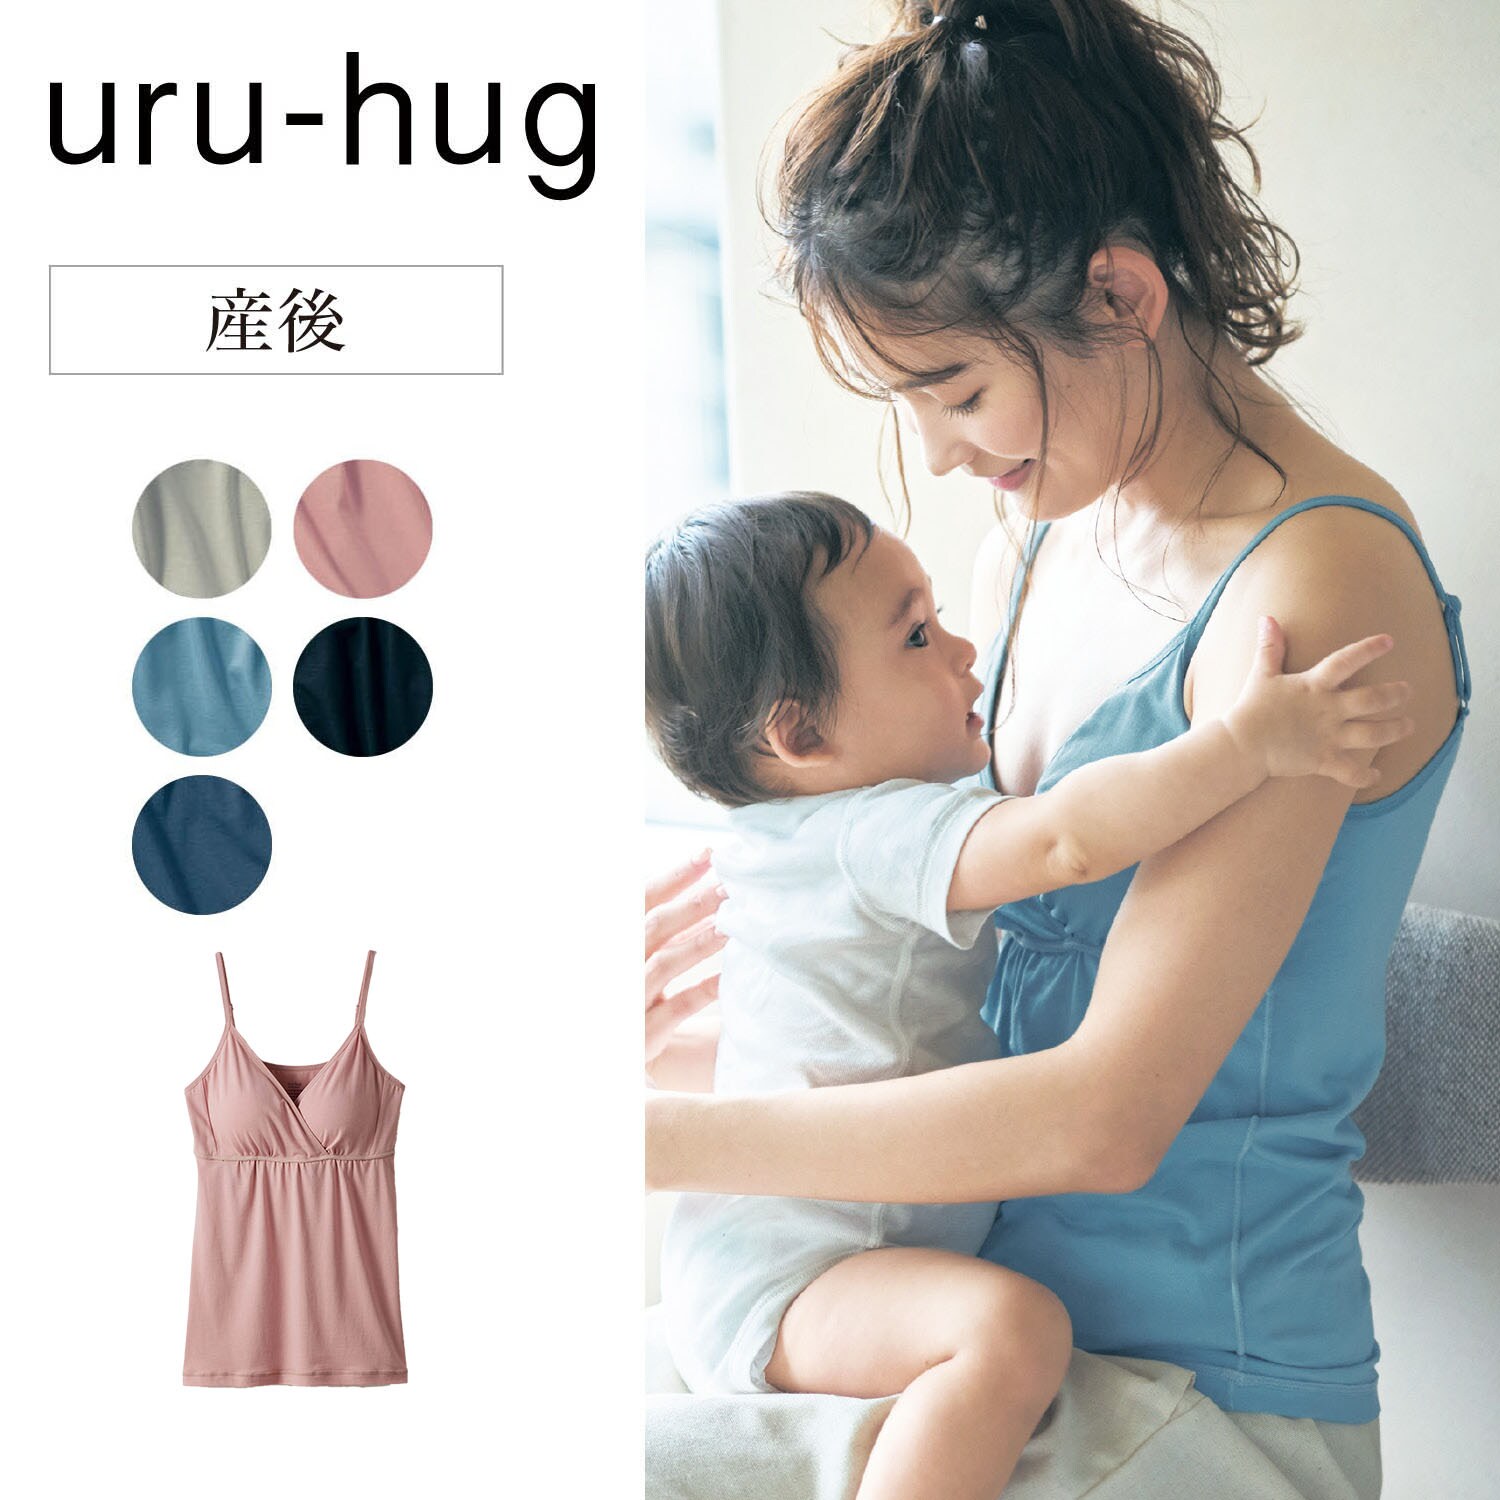 【ウルハグ/uru-hug】授乳に便利!なめらか保湿素材の産後サイズ瞬間授乳ブラキャミソール